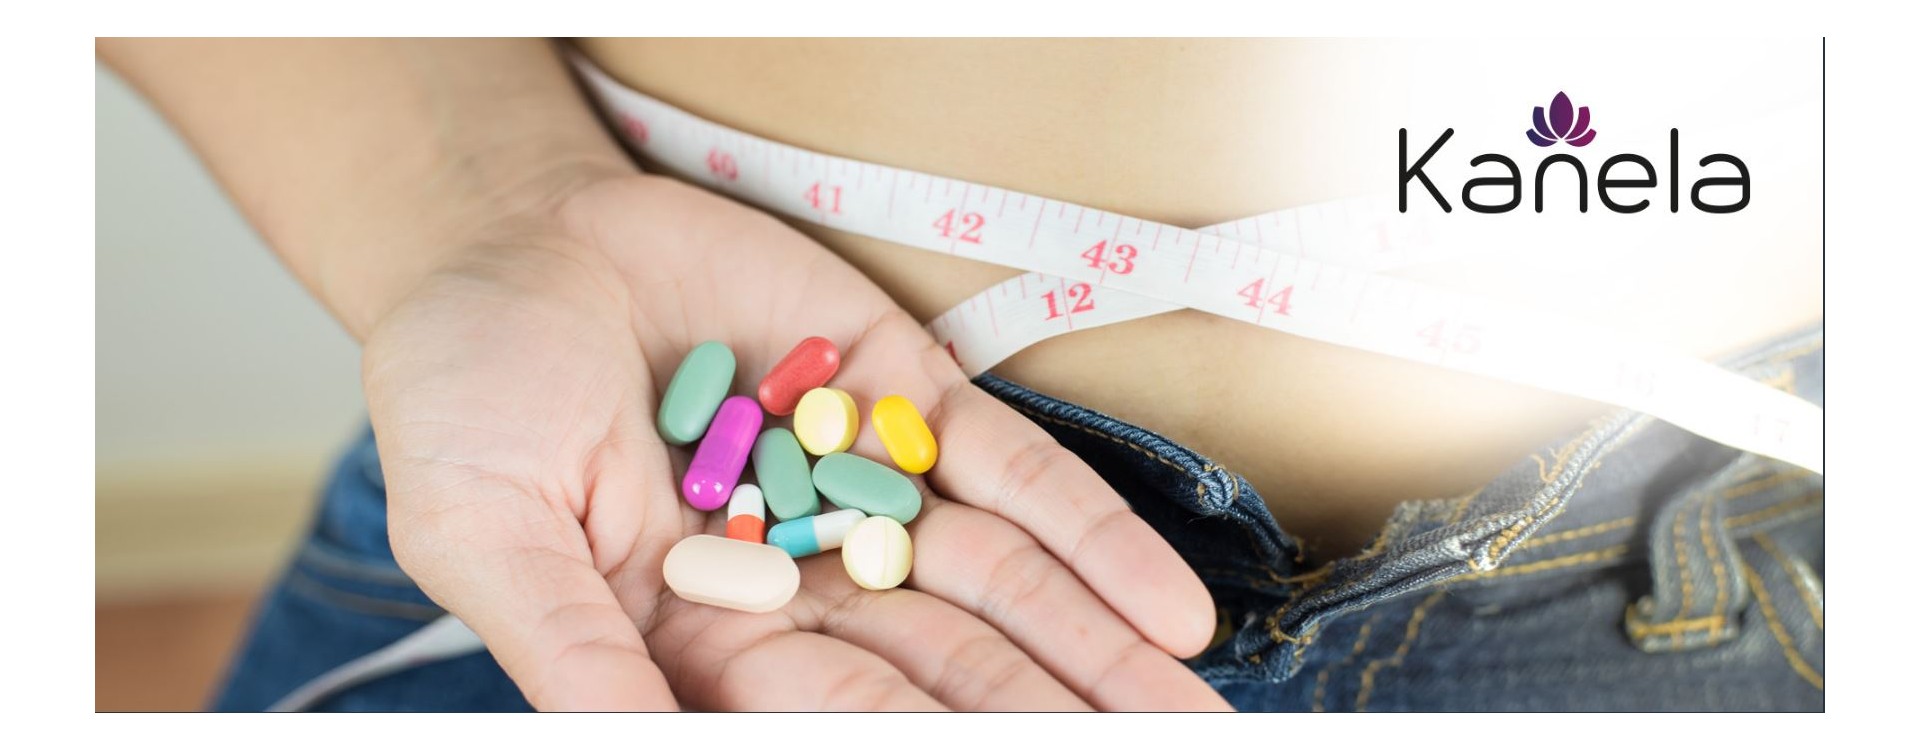 Quali sono i vantaggi delle pillole dimagranti?